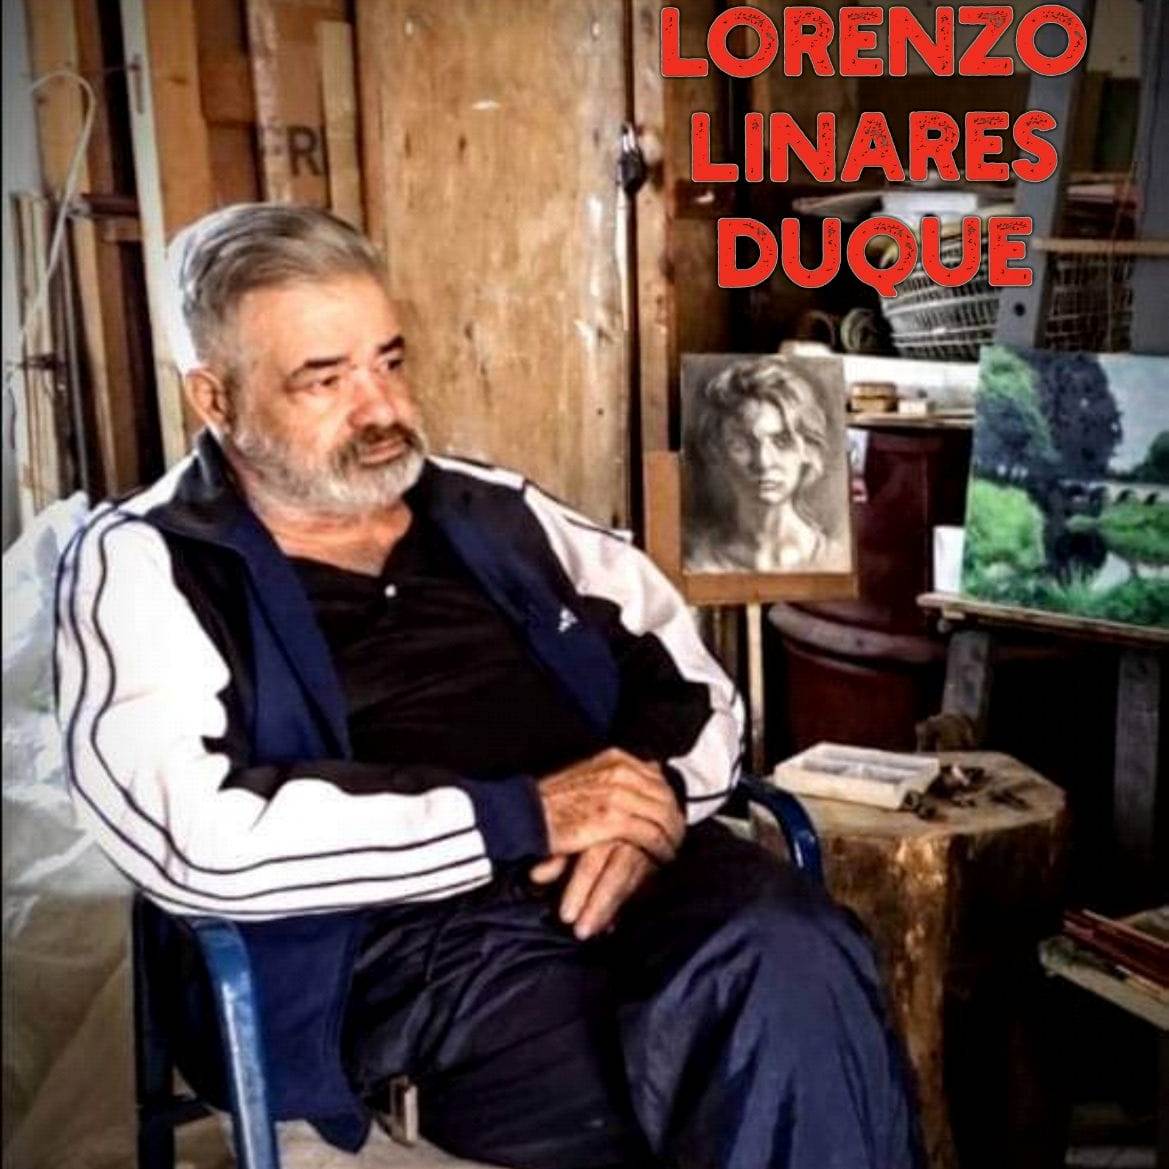 Fallece en Camagüey el artista plástico Lorenzo Linares Duque (+ Fotos)